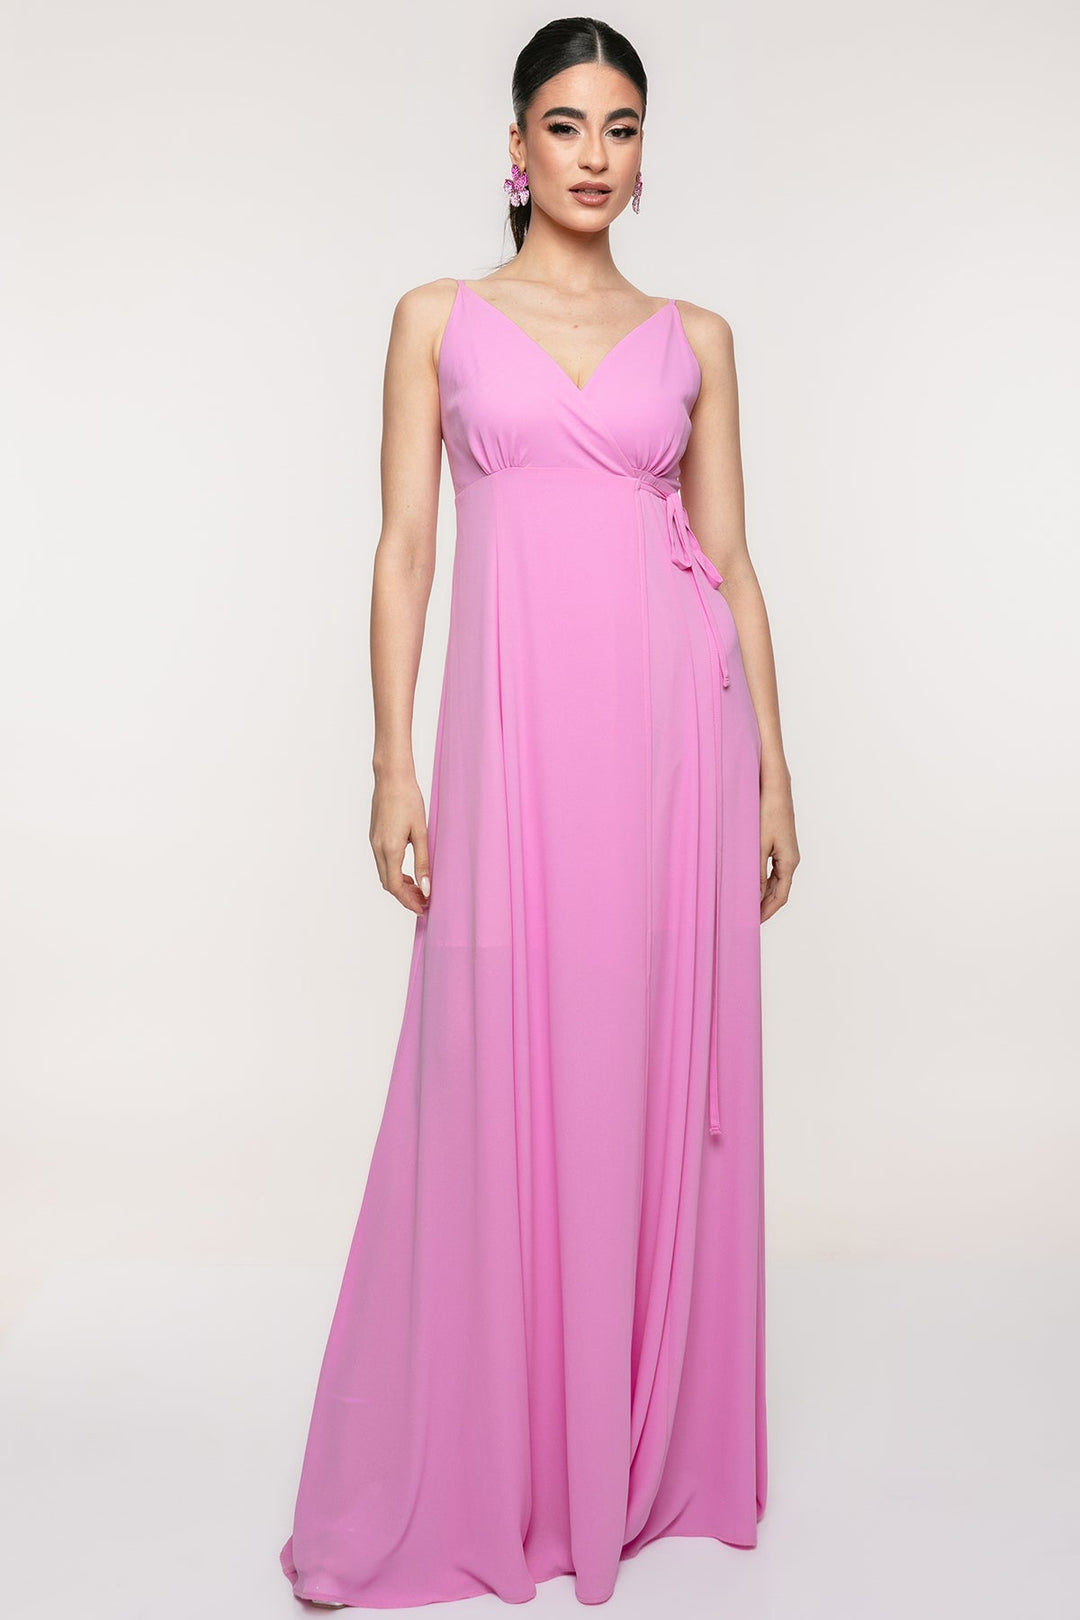 Φόρεμα μάξι κρουαζέ με δέσιμο Access Fashion - A Collection Boutique